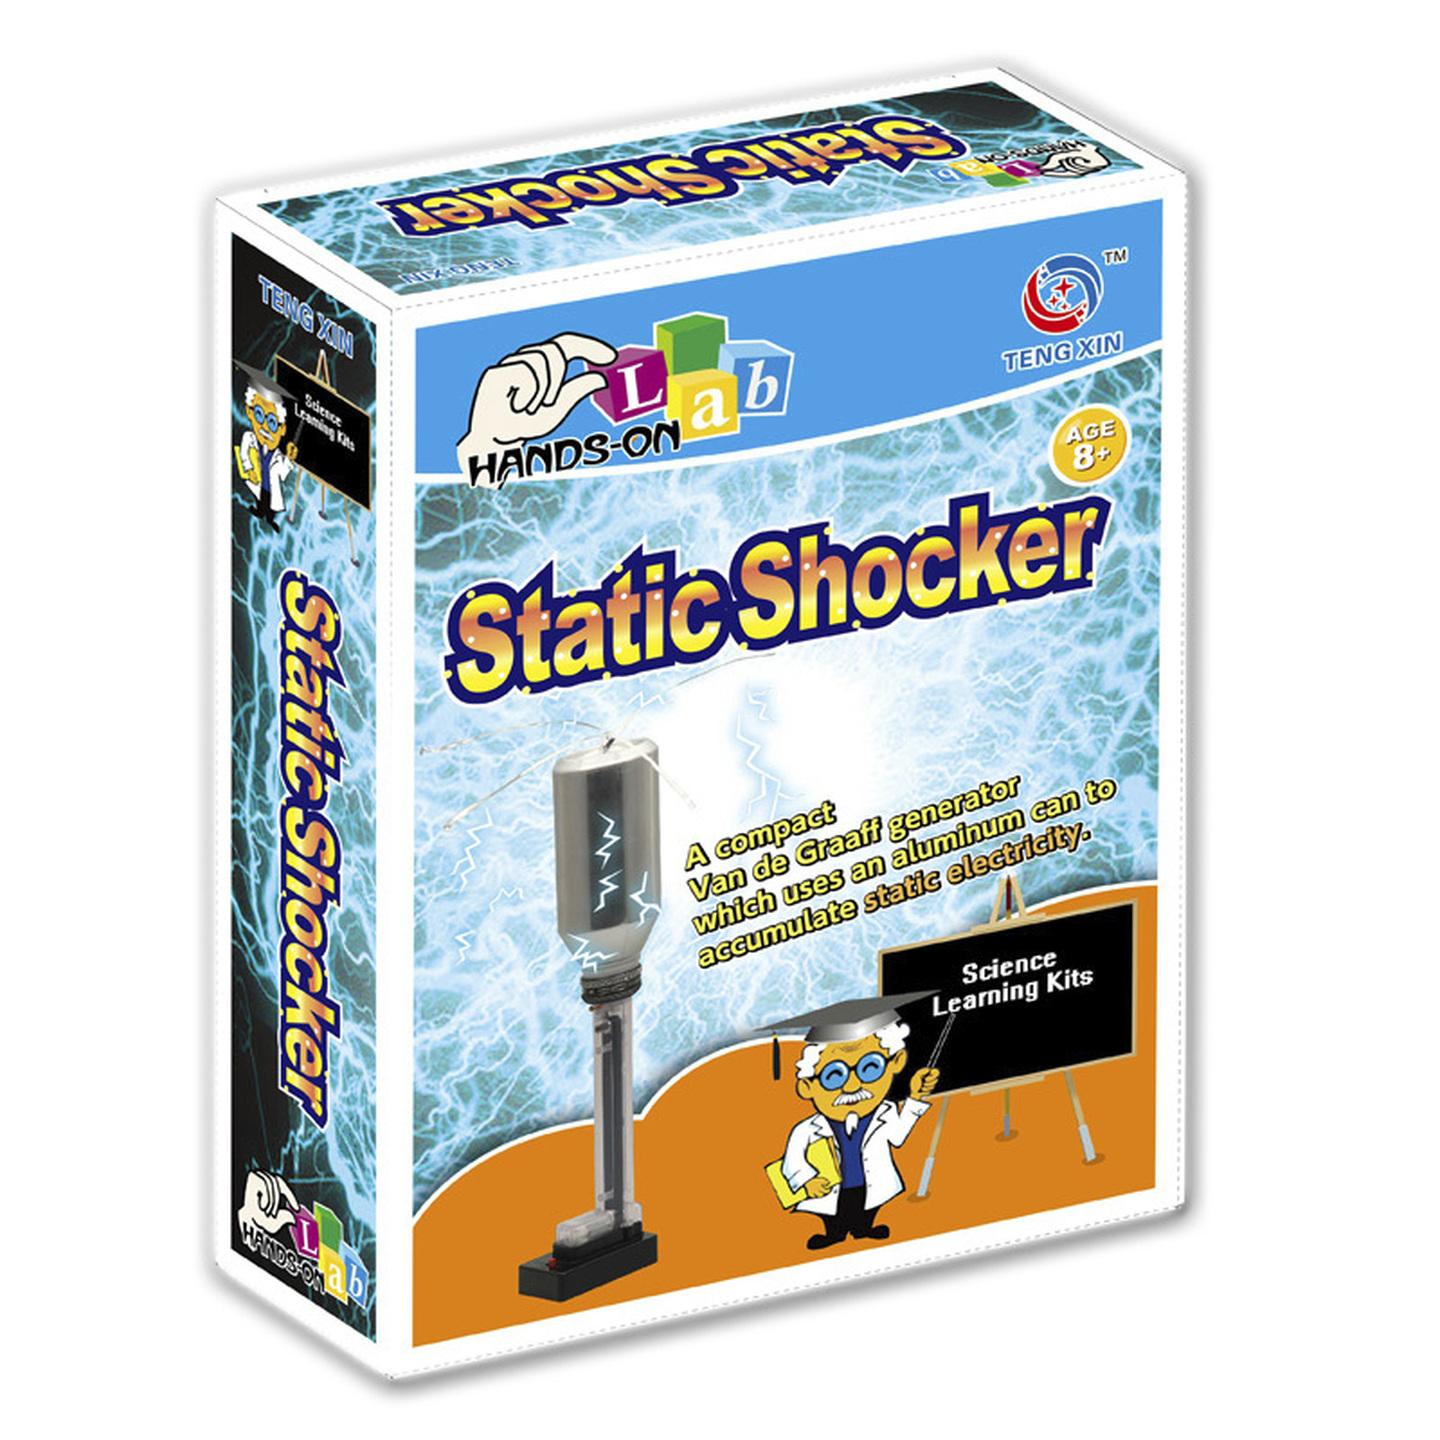 Static Shocker Mini Science Kit